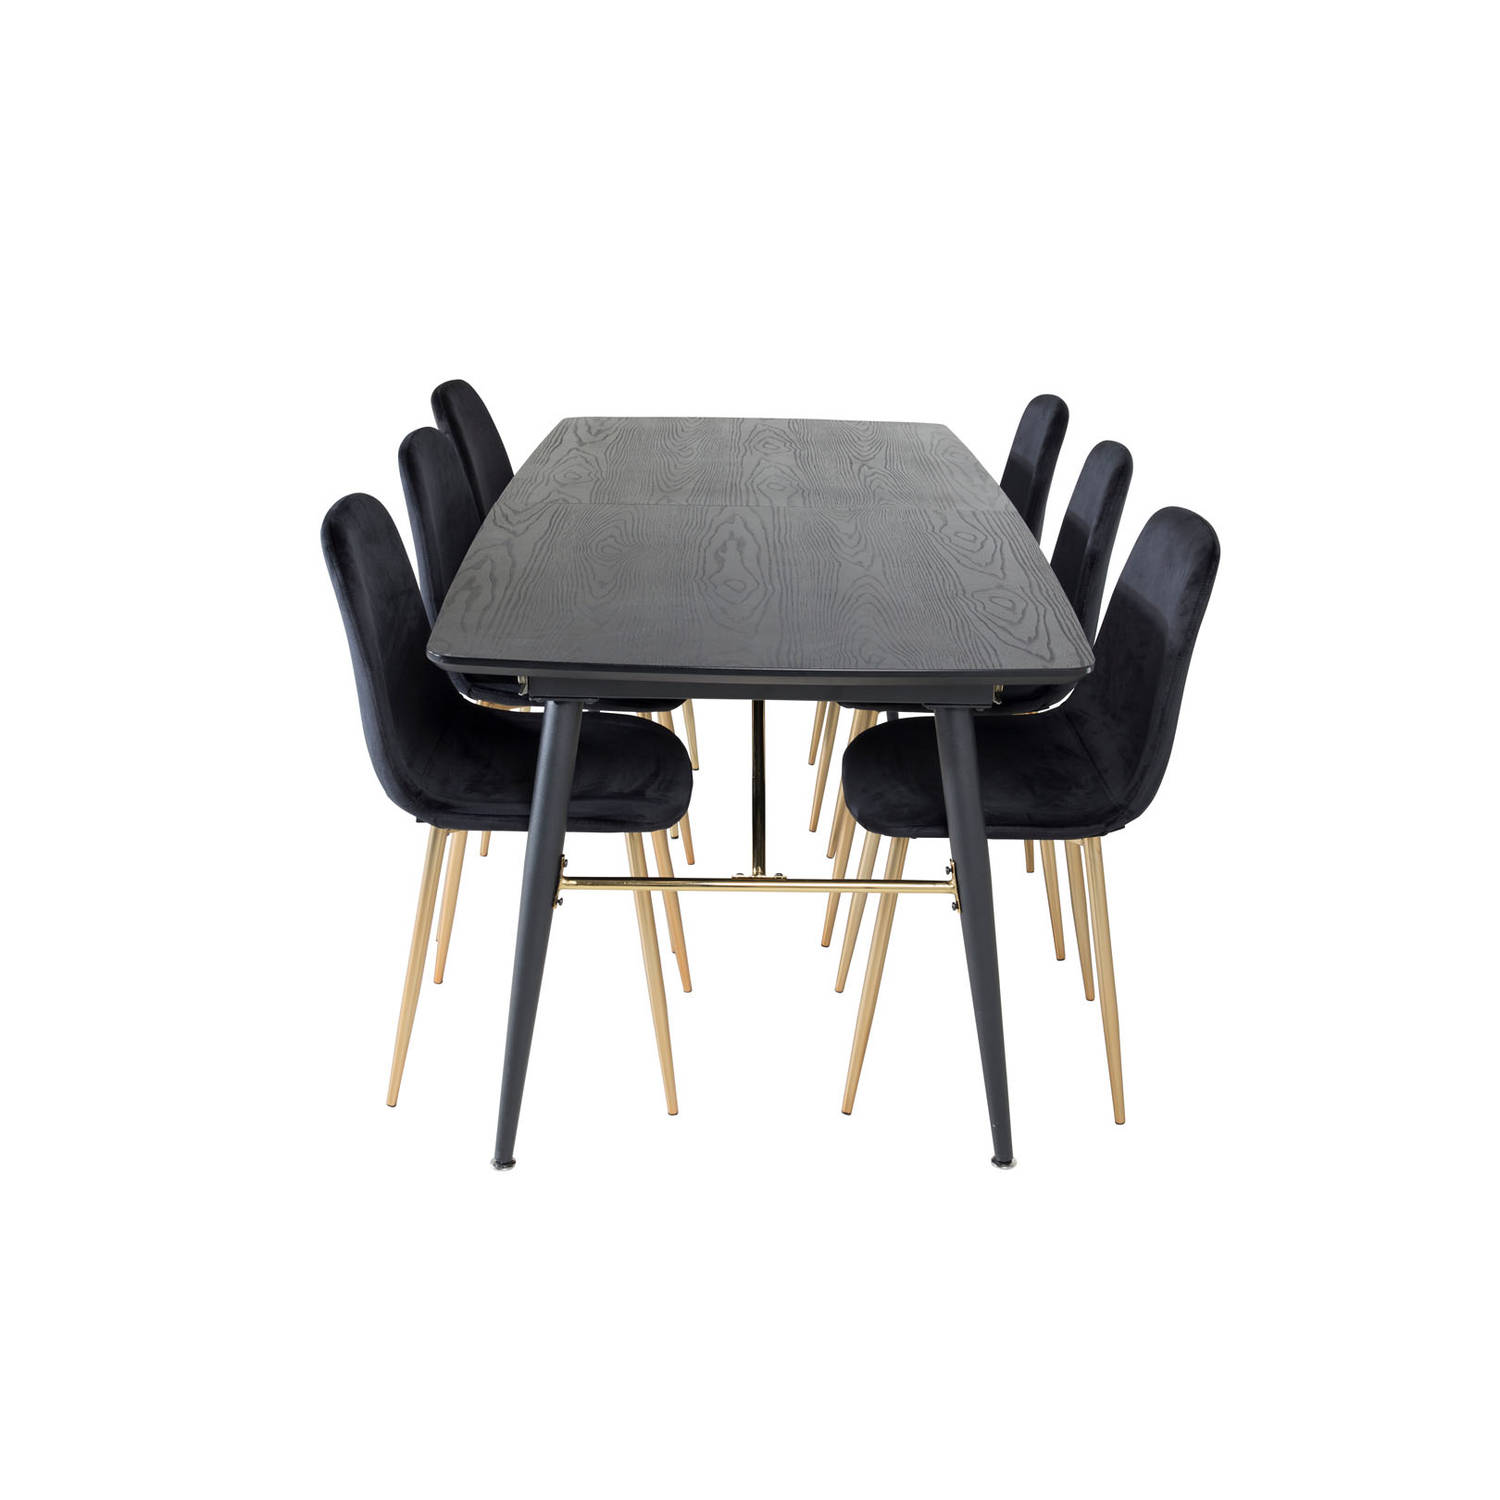 Gold eethoek eetkamertafel uitschuifbare tafel lengte cm 180 / 220 zwart en 6 Polar eetkamerstal velours zwart, messing decor.